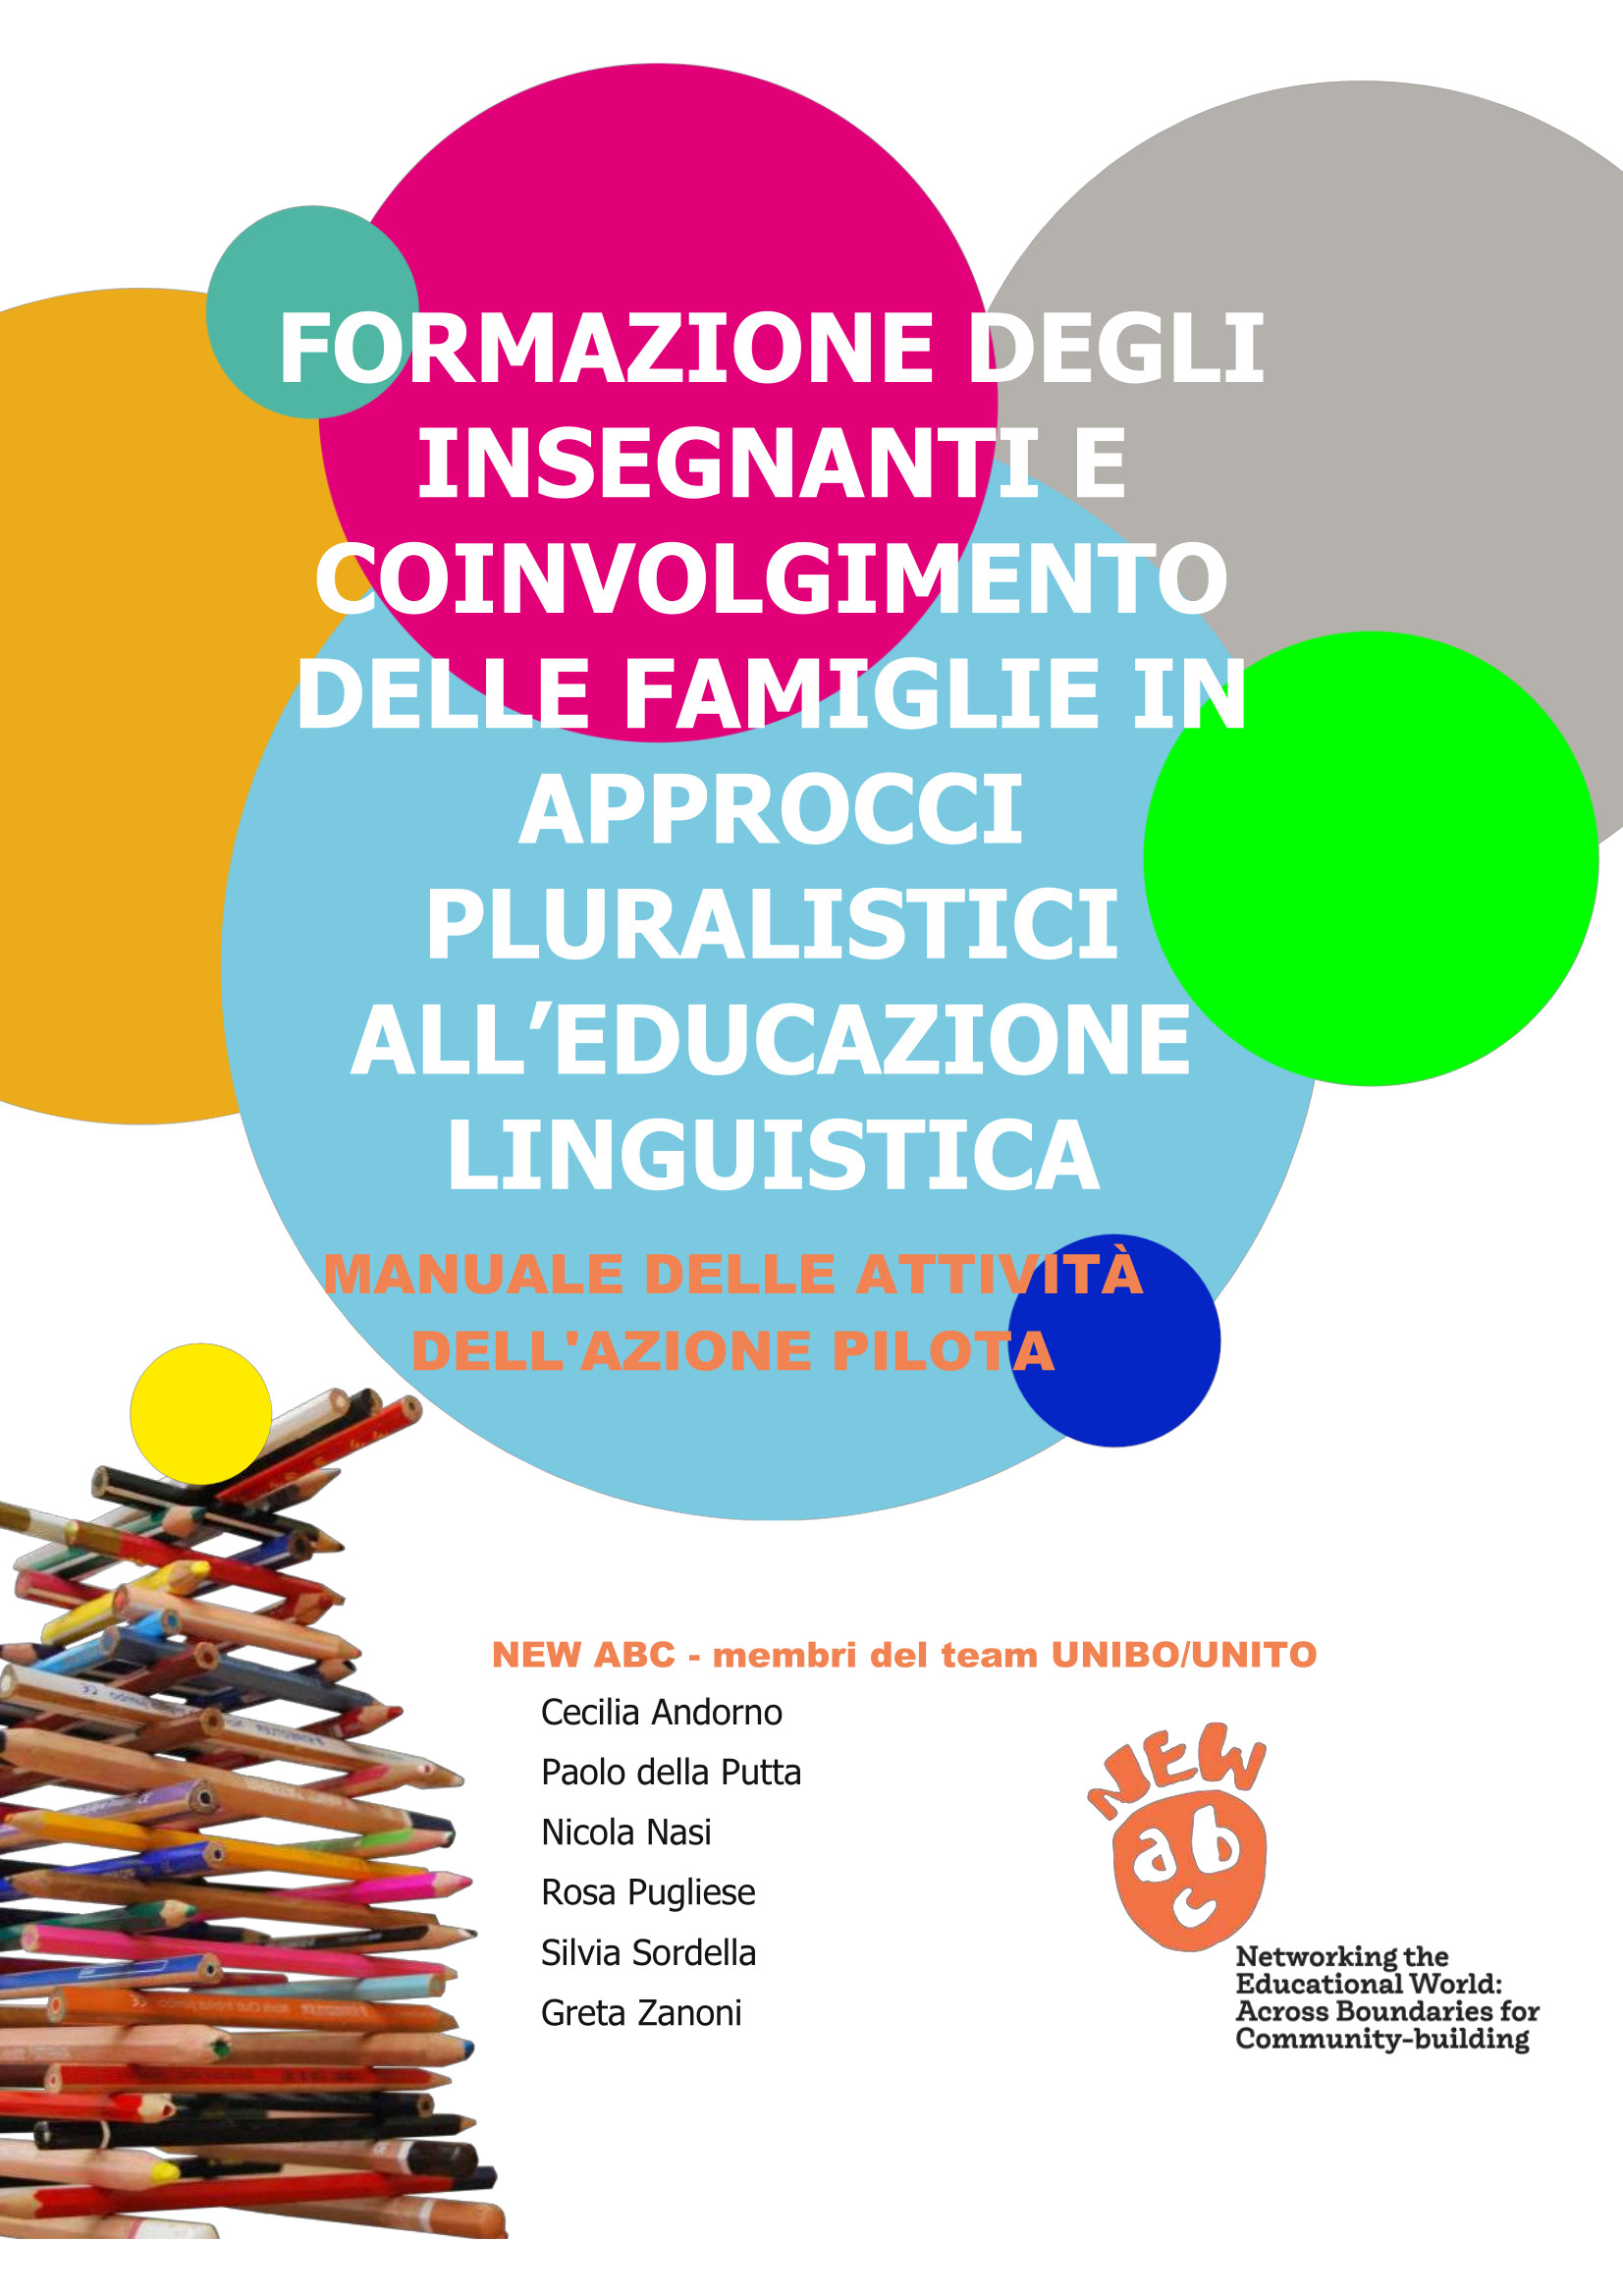 Formazione degli insegnanti e coinvolgimento delle famiglie in approcci pluralistici all’educazione linguistica